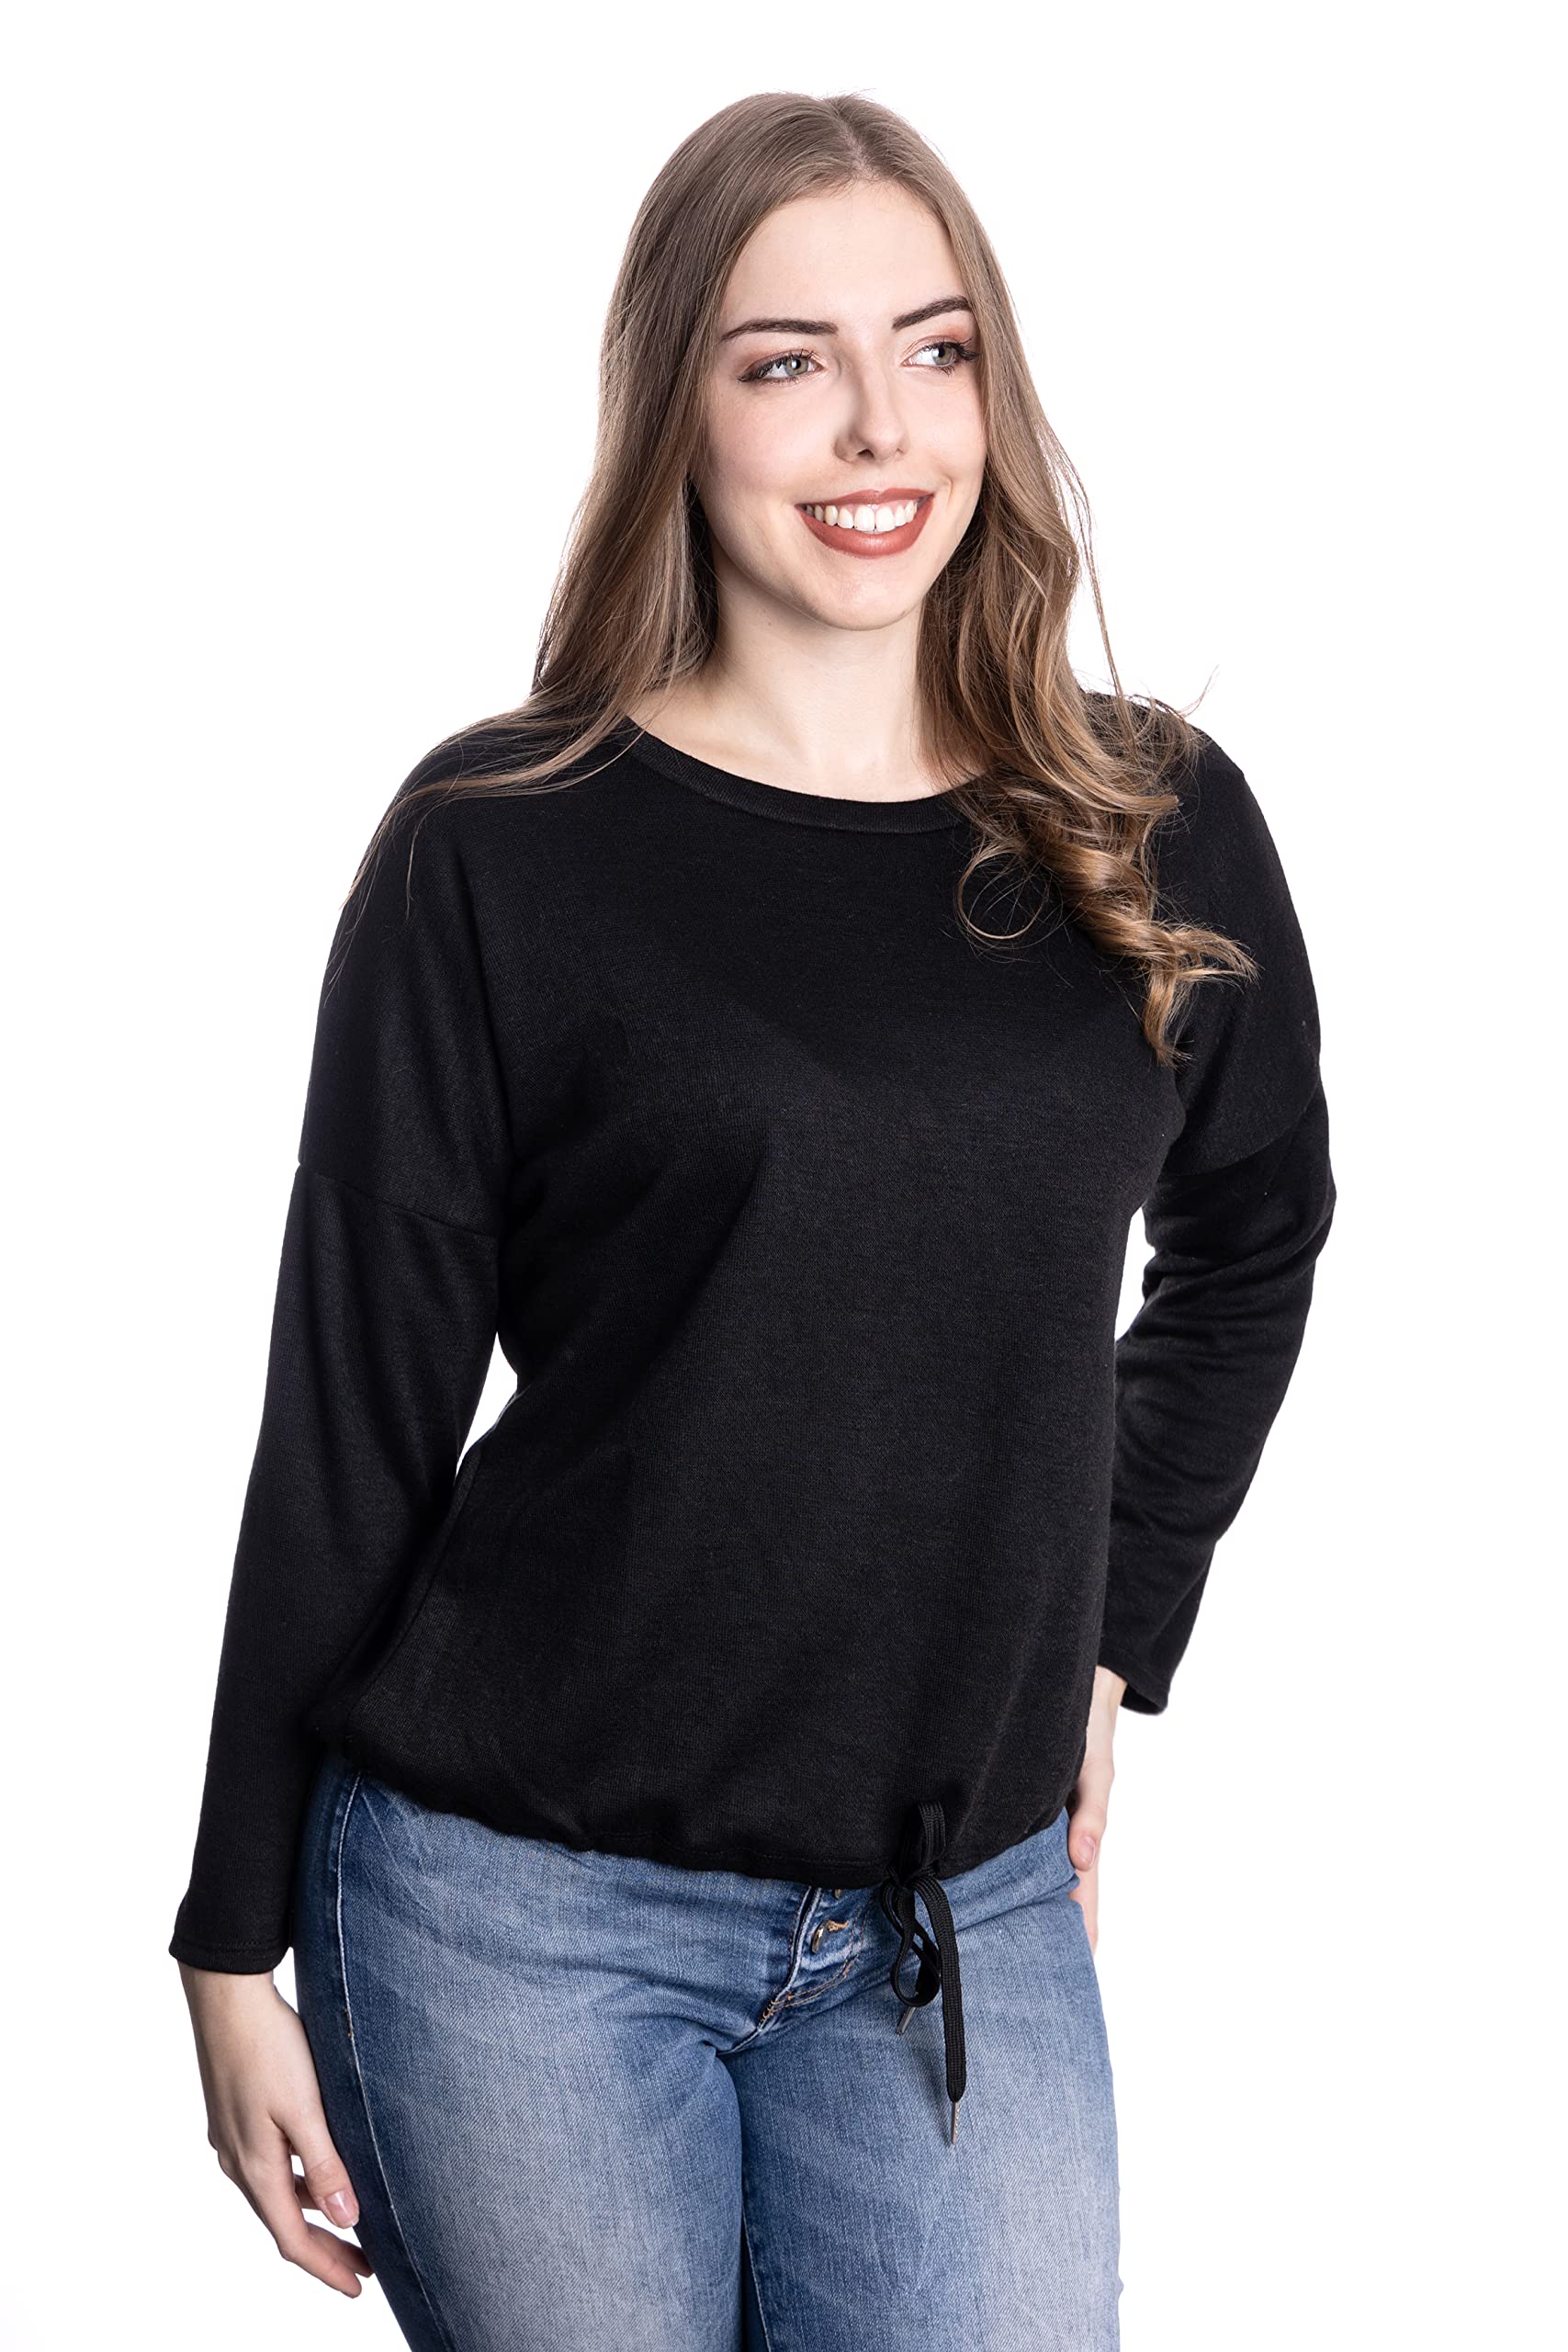 WOMEN'S WEAR U&F FASHIONSTORE U&F Damen Sweatshirt | Shirt für Freizeit und Homewear | Lässiger Pullover mit Rundhalsausschnitt Schwarz Grösse XXL